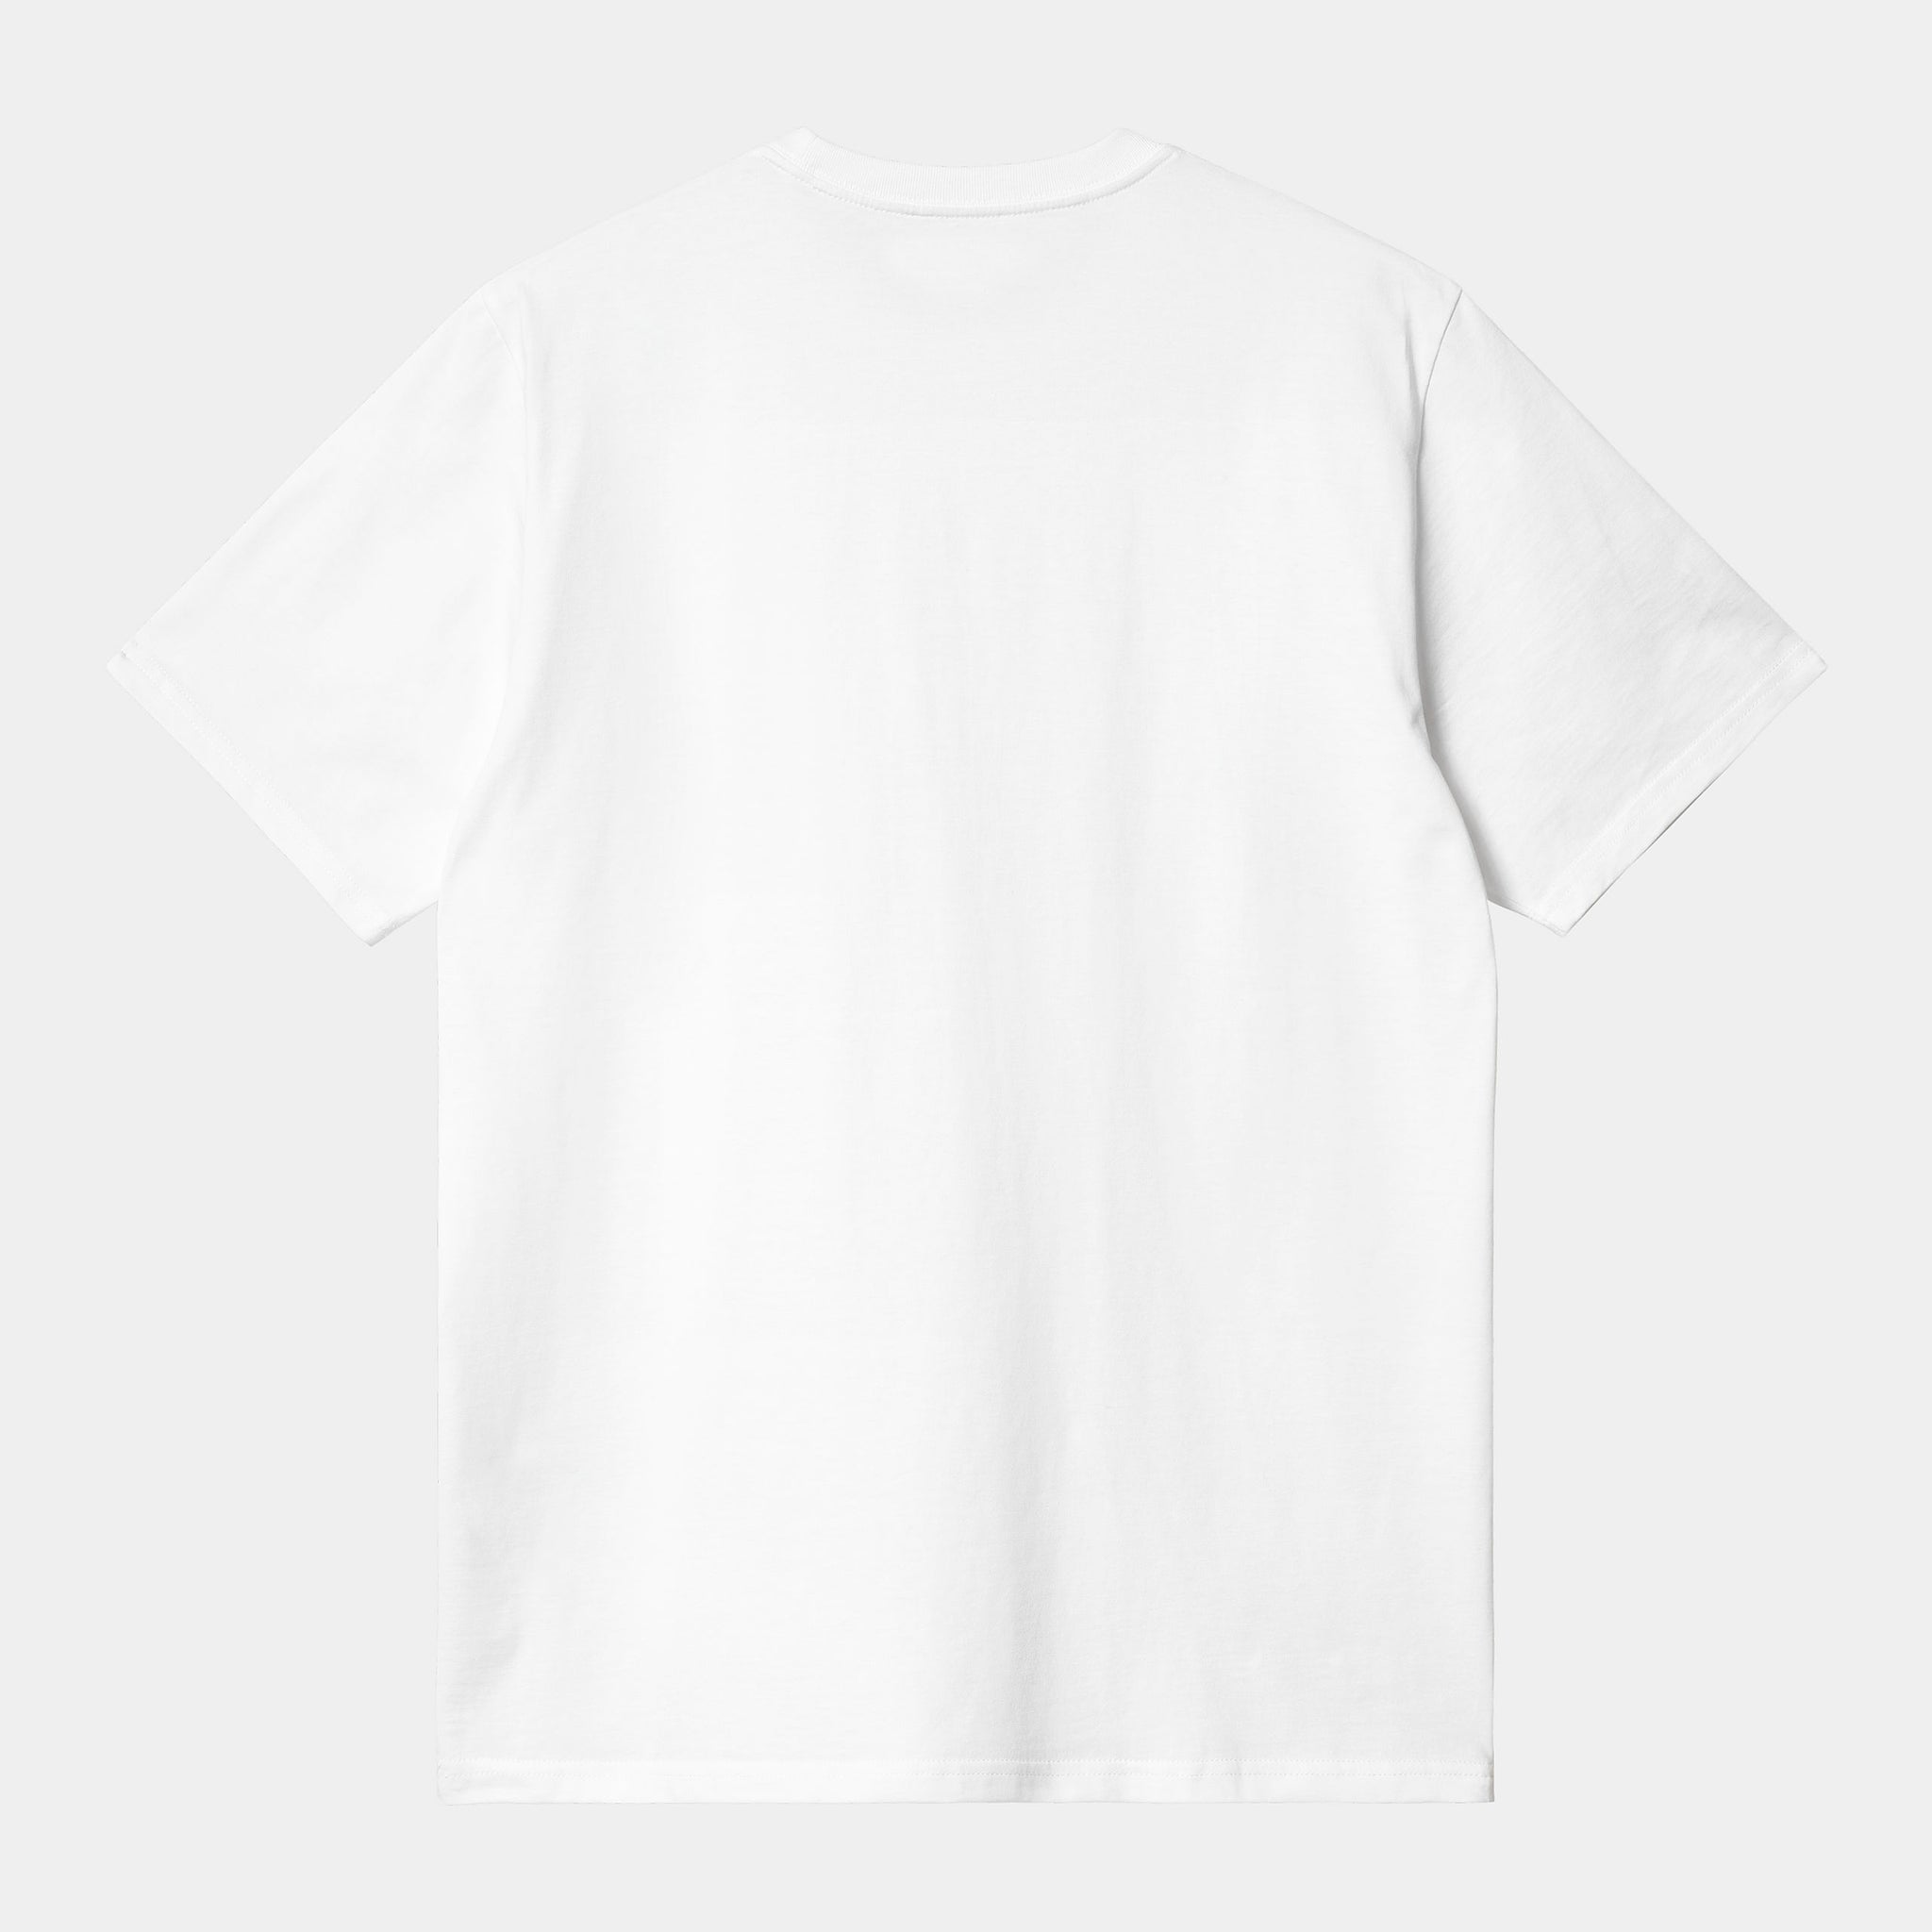 S/S Onyx T-Shirt (White / Black)